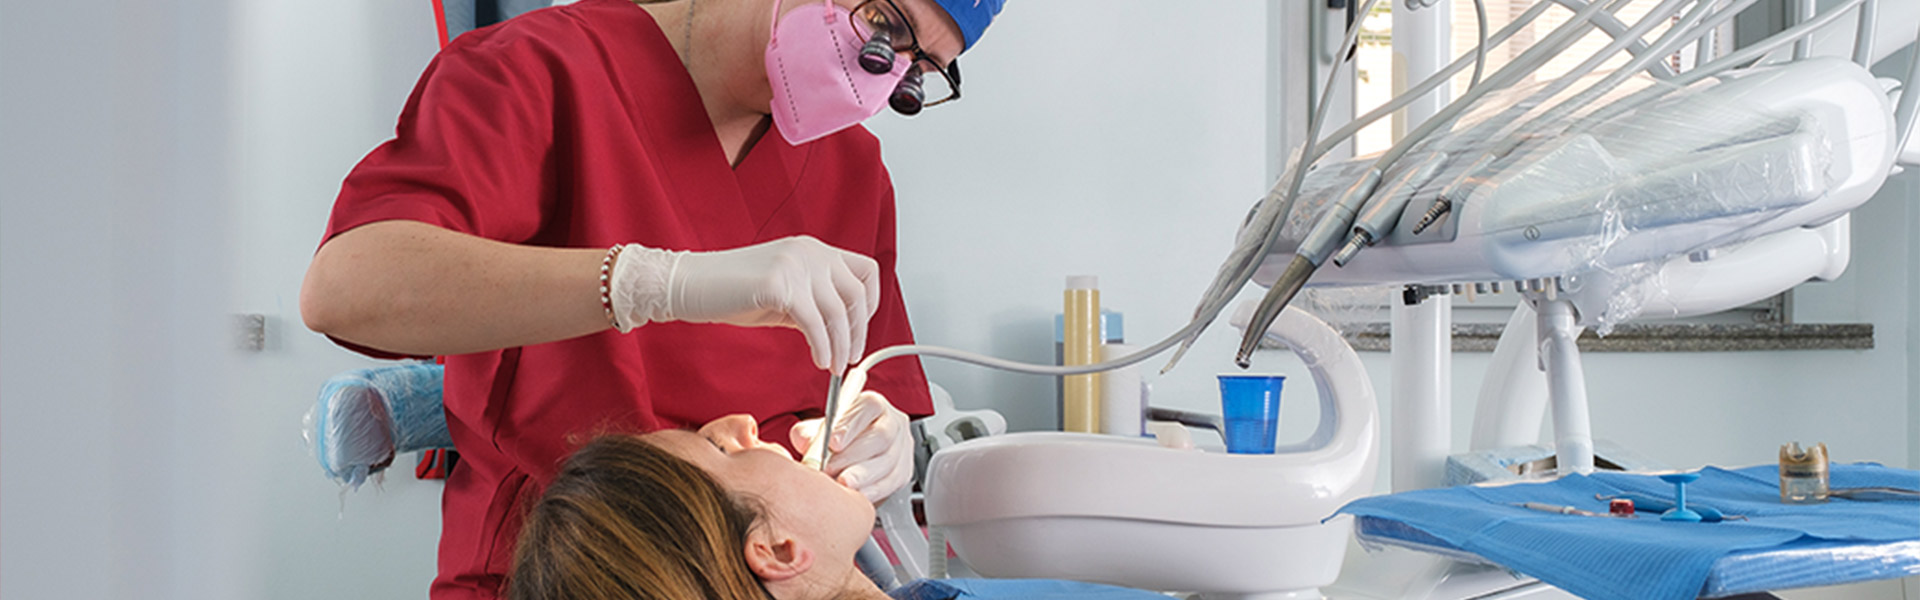 Studio Dentistico Galassini | Igiene